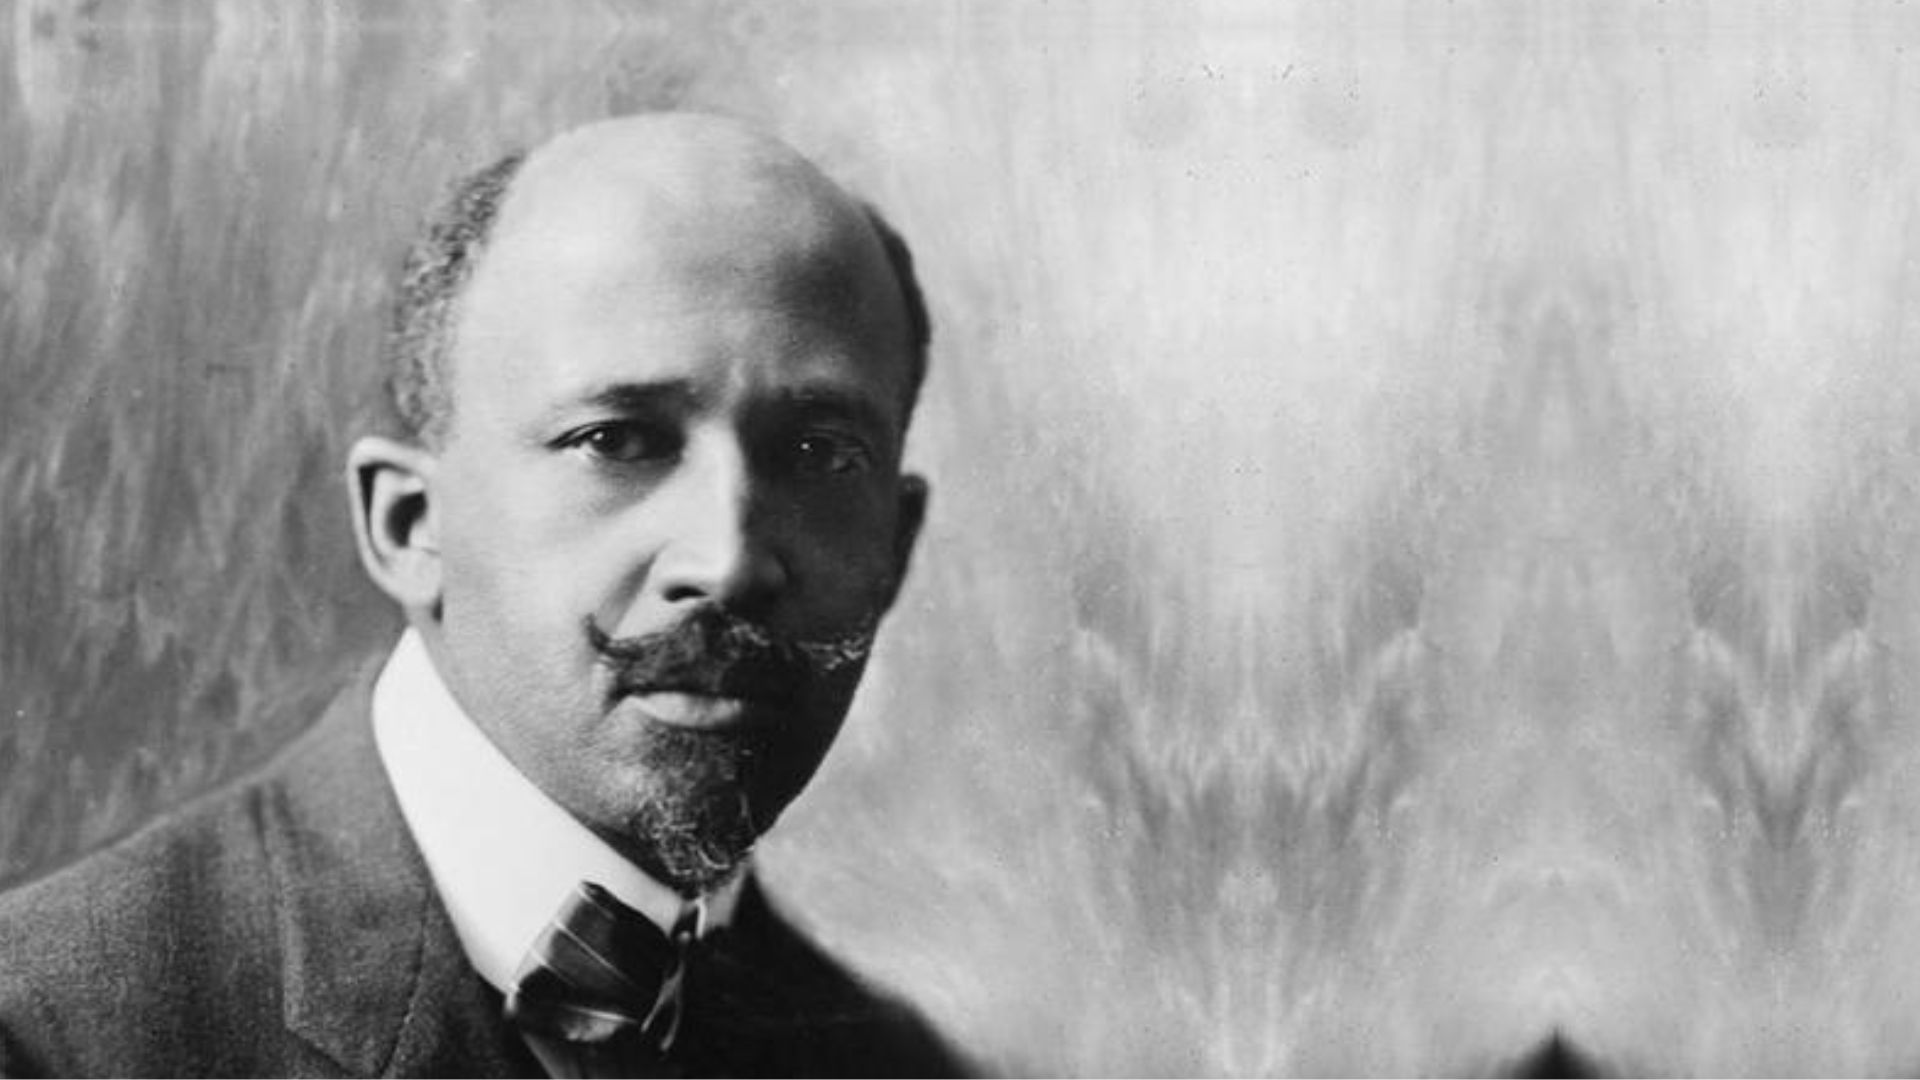 Black And White Shot Of W.E.B. Du Bois